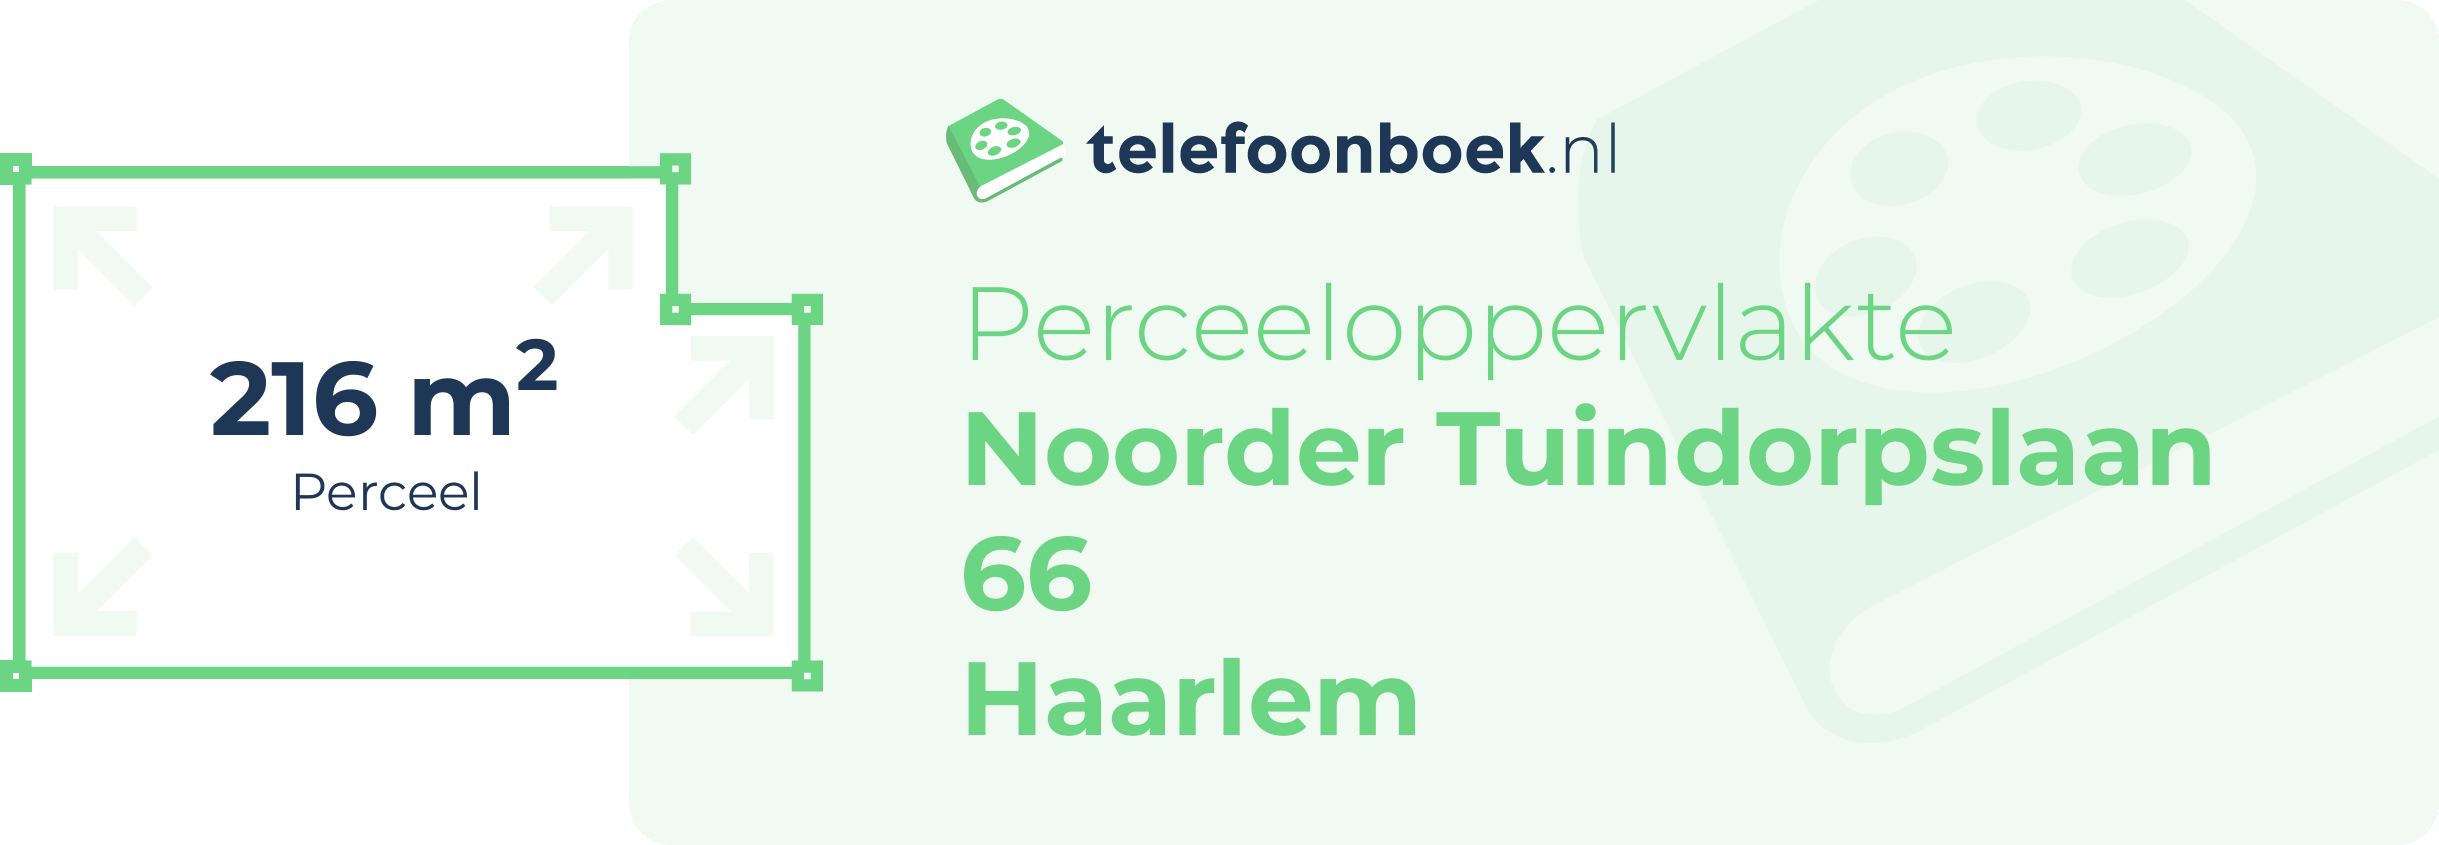 Perceeloppervlakte Noorder Tuindorpslaan 66 Haarlem